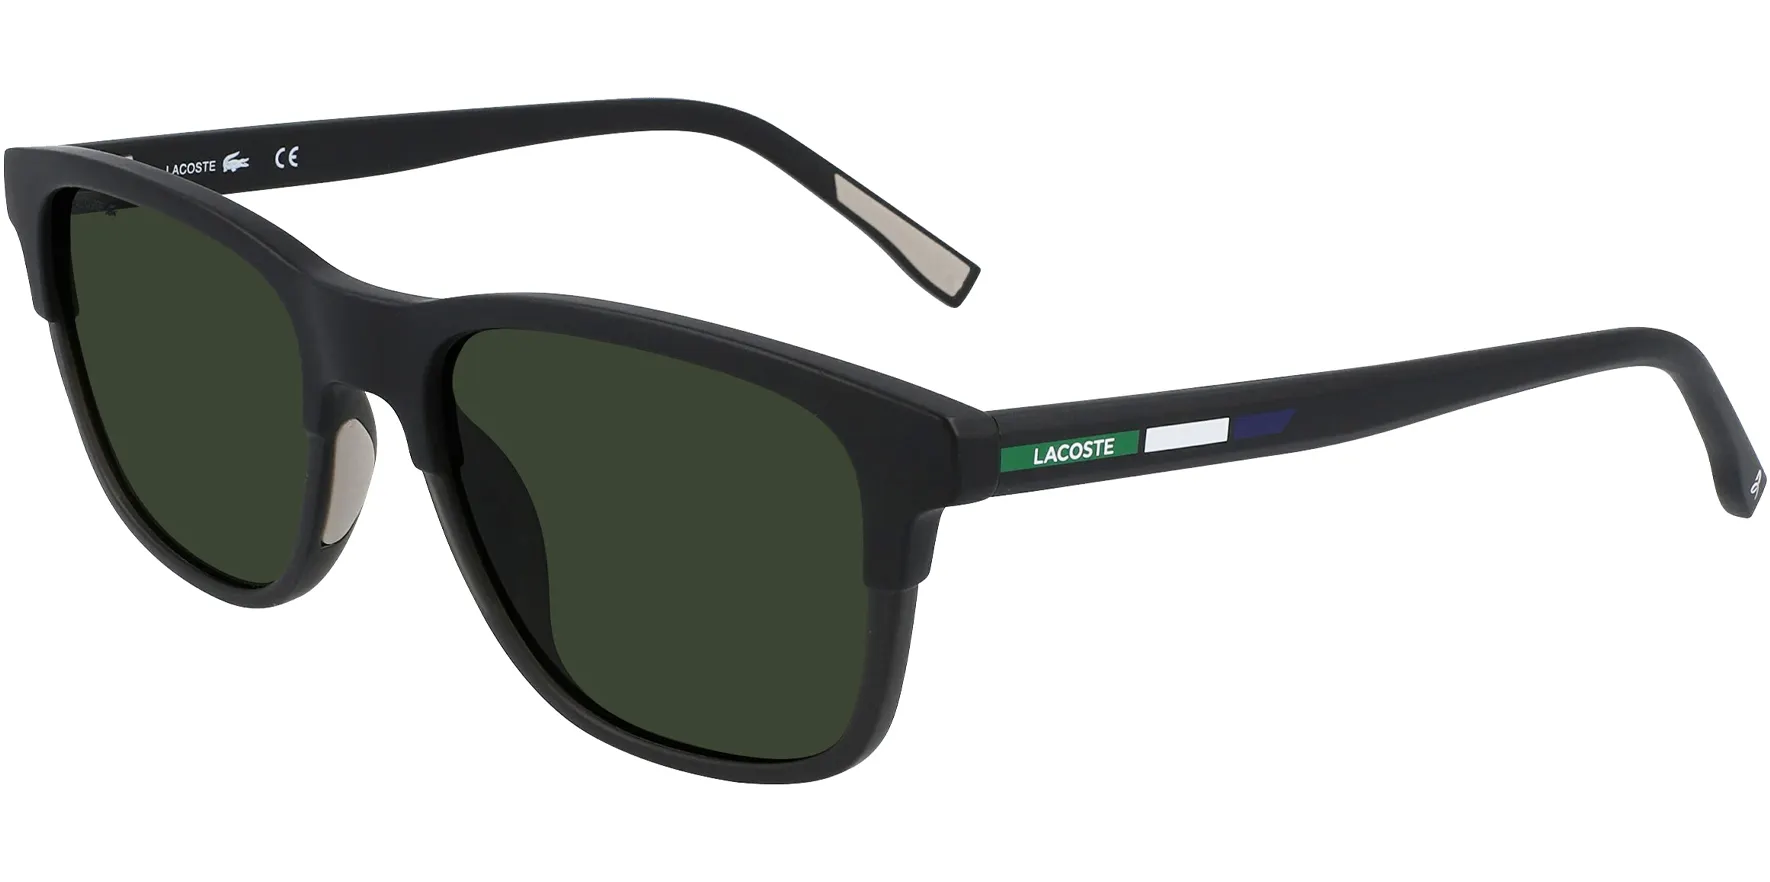 Lacoste Sunglasses: Polarized $37, Non-Polarized